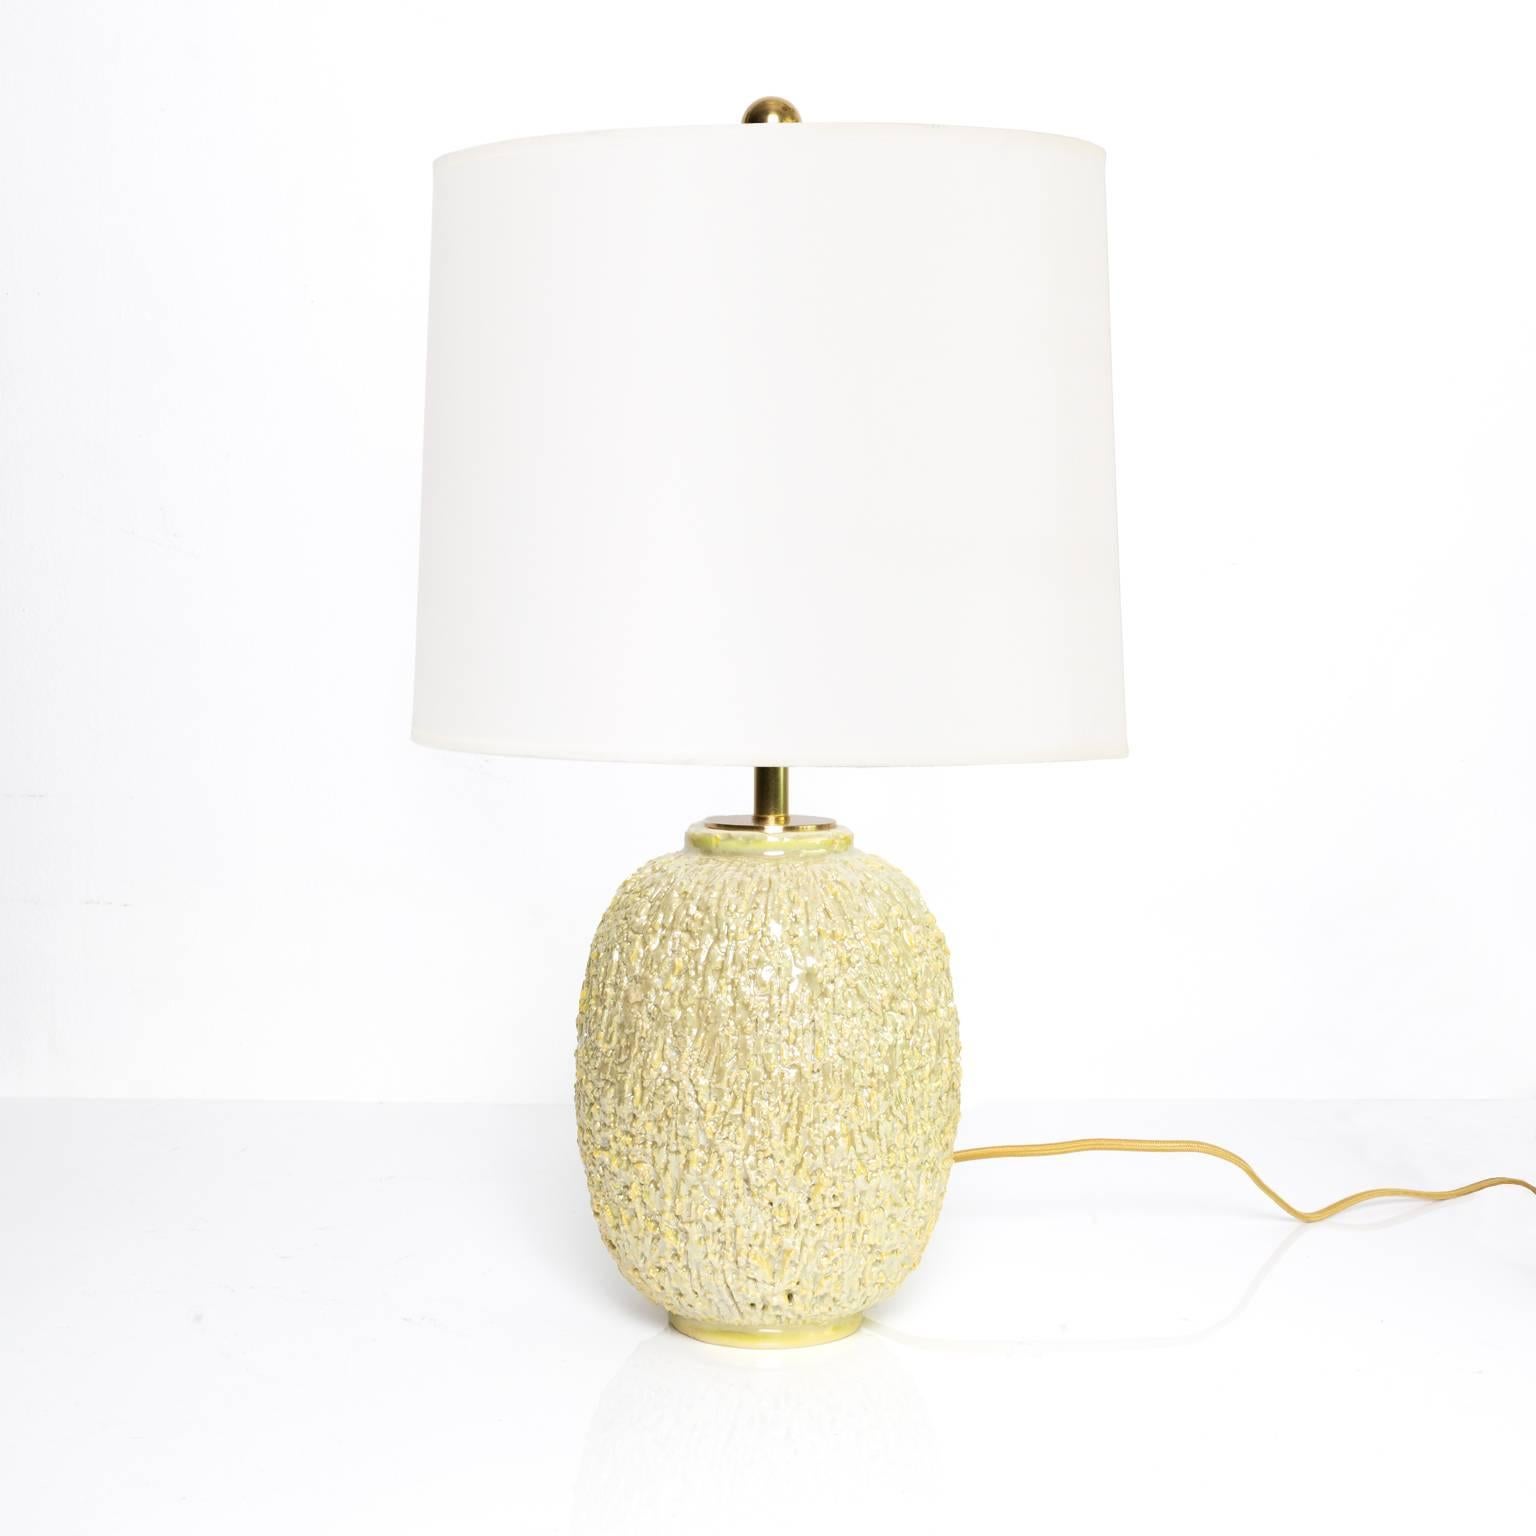 Lampe en céramique à la surface très texturée, de style scandinave moderne, réalisée par Gunnar Nylund pour Rörstrand, Suède. La lampe est faite d'argile chamottée et finie avec une glaçure lustrée de couleur crème. Nouvelle quincaillerie